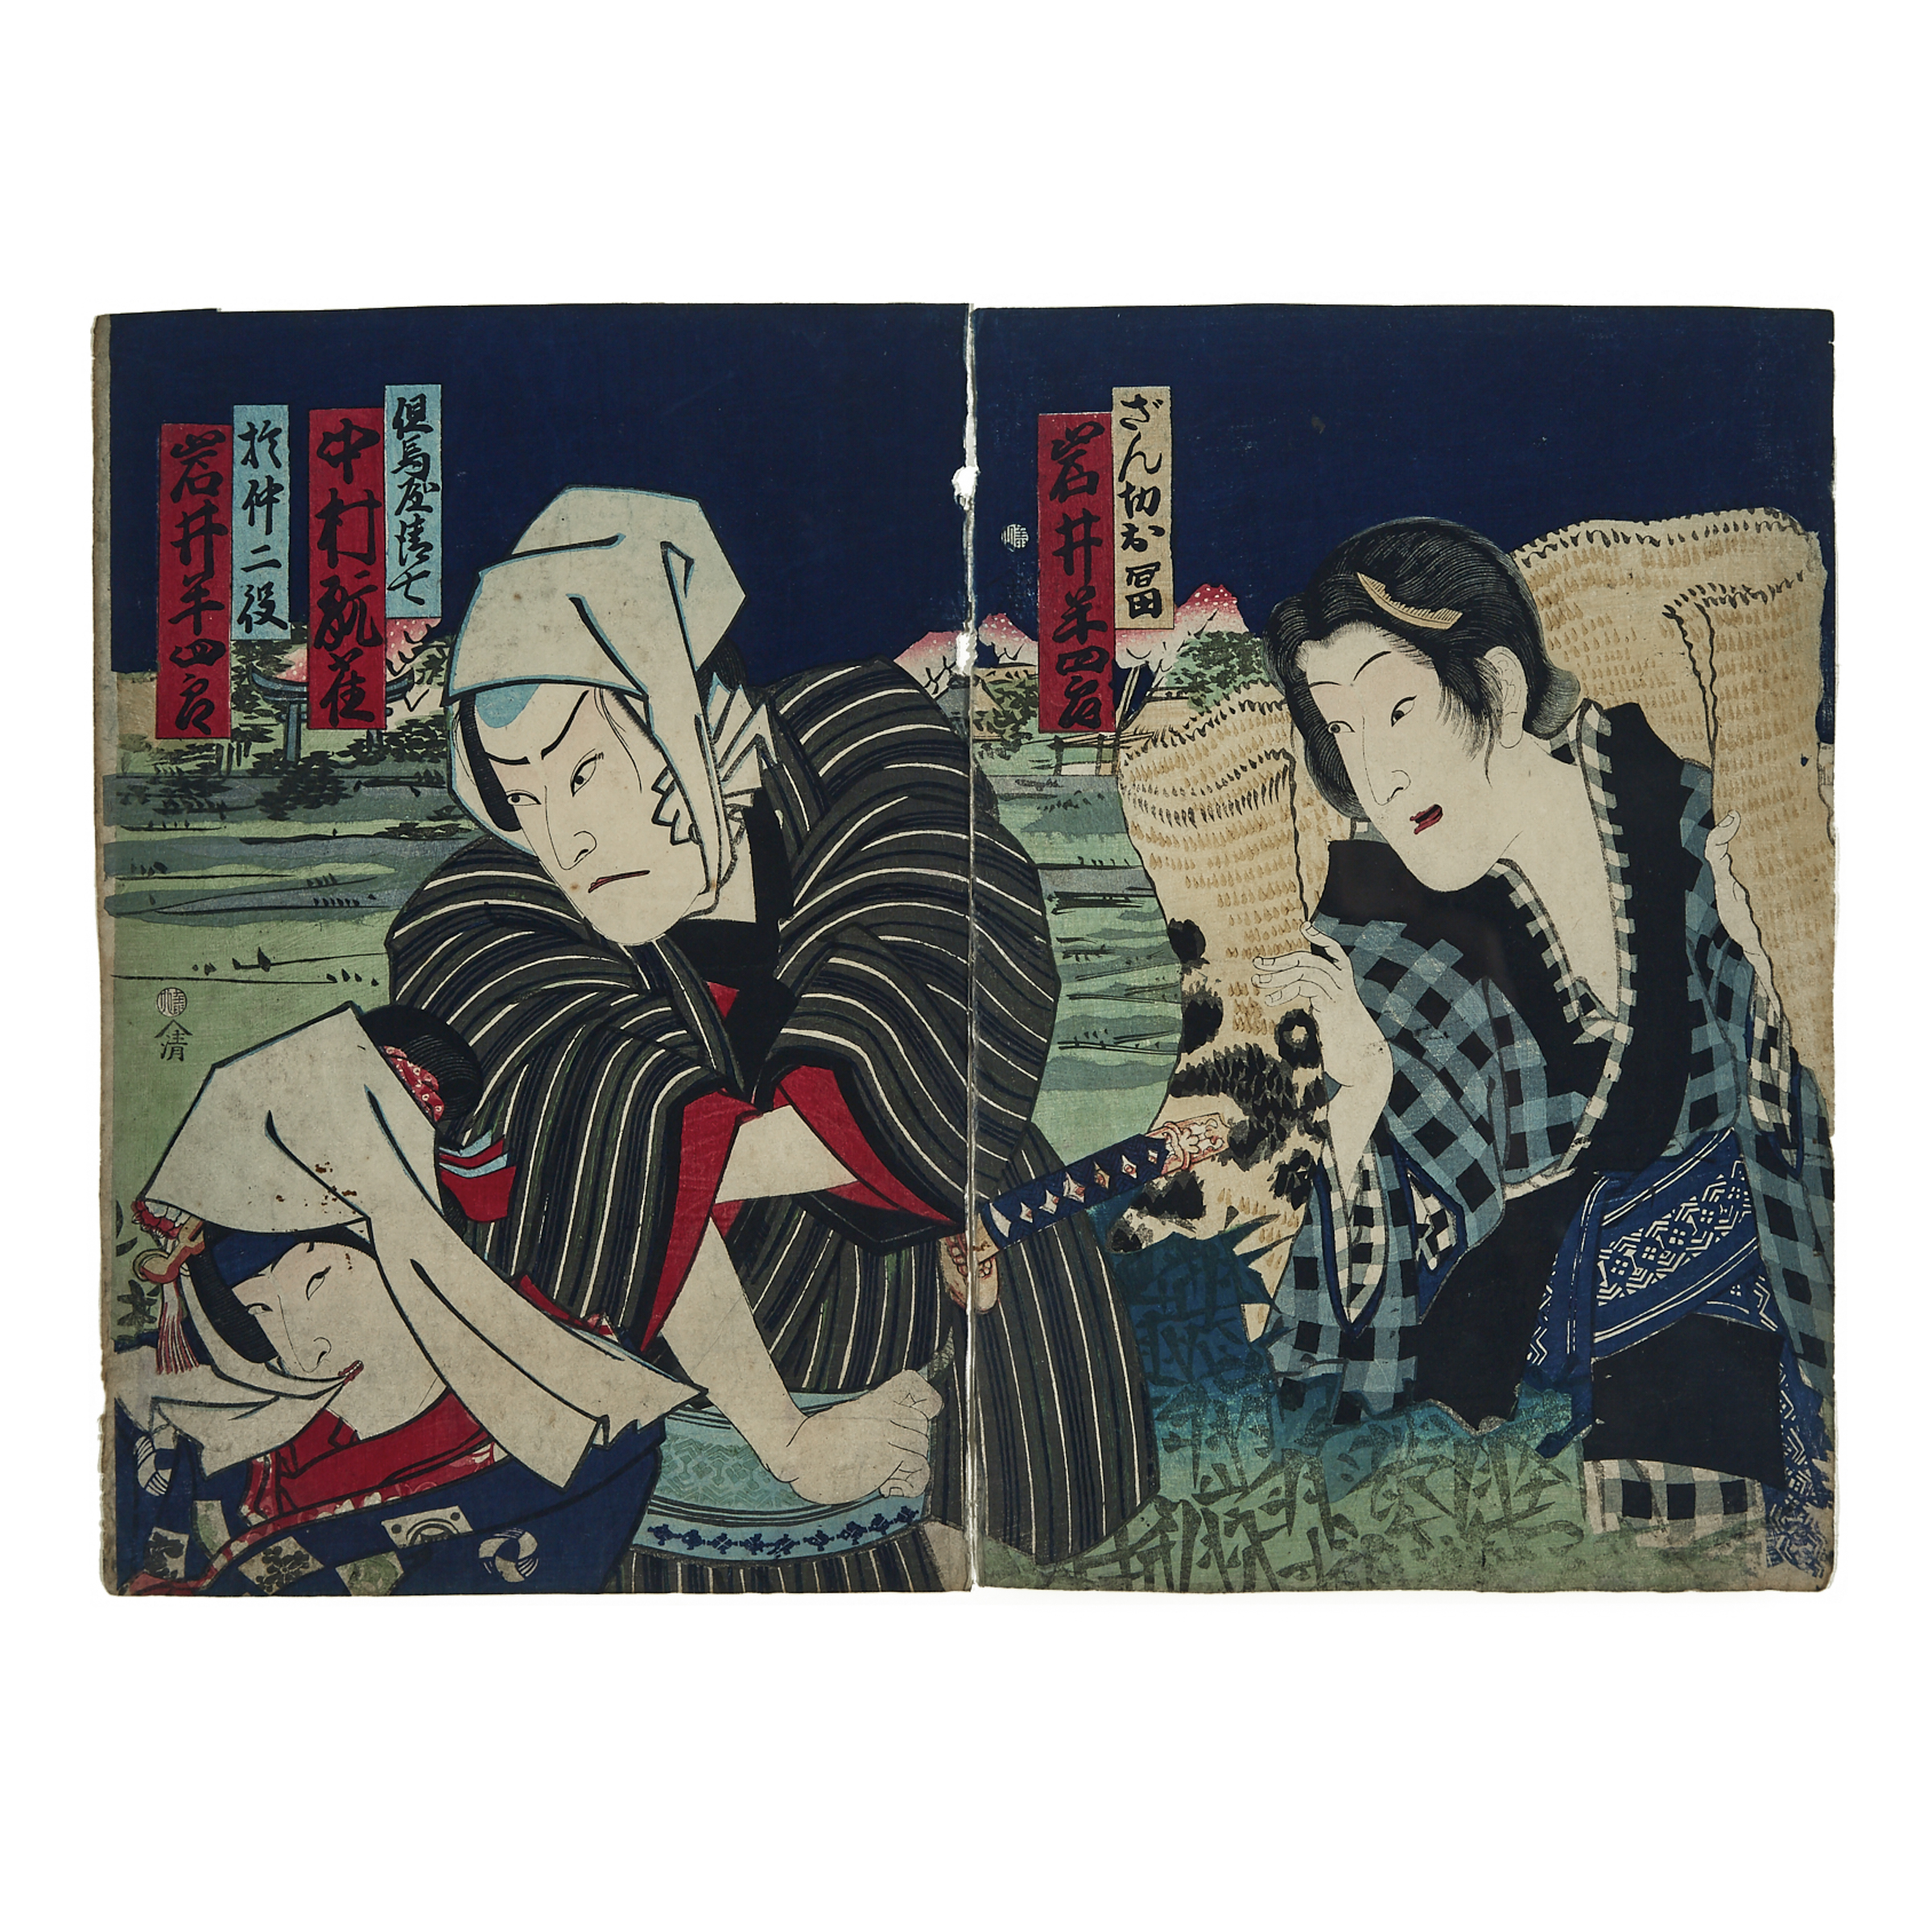 Attributed to Toyohara Kunichika (1835-1900), Actor Diptych, 19th Century